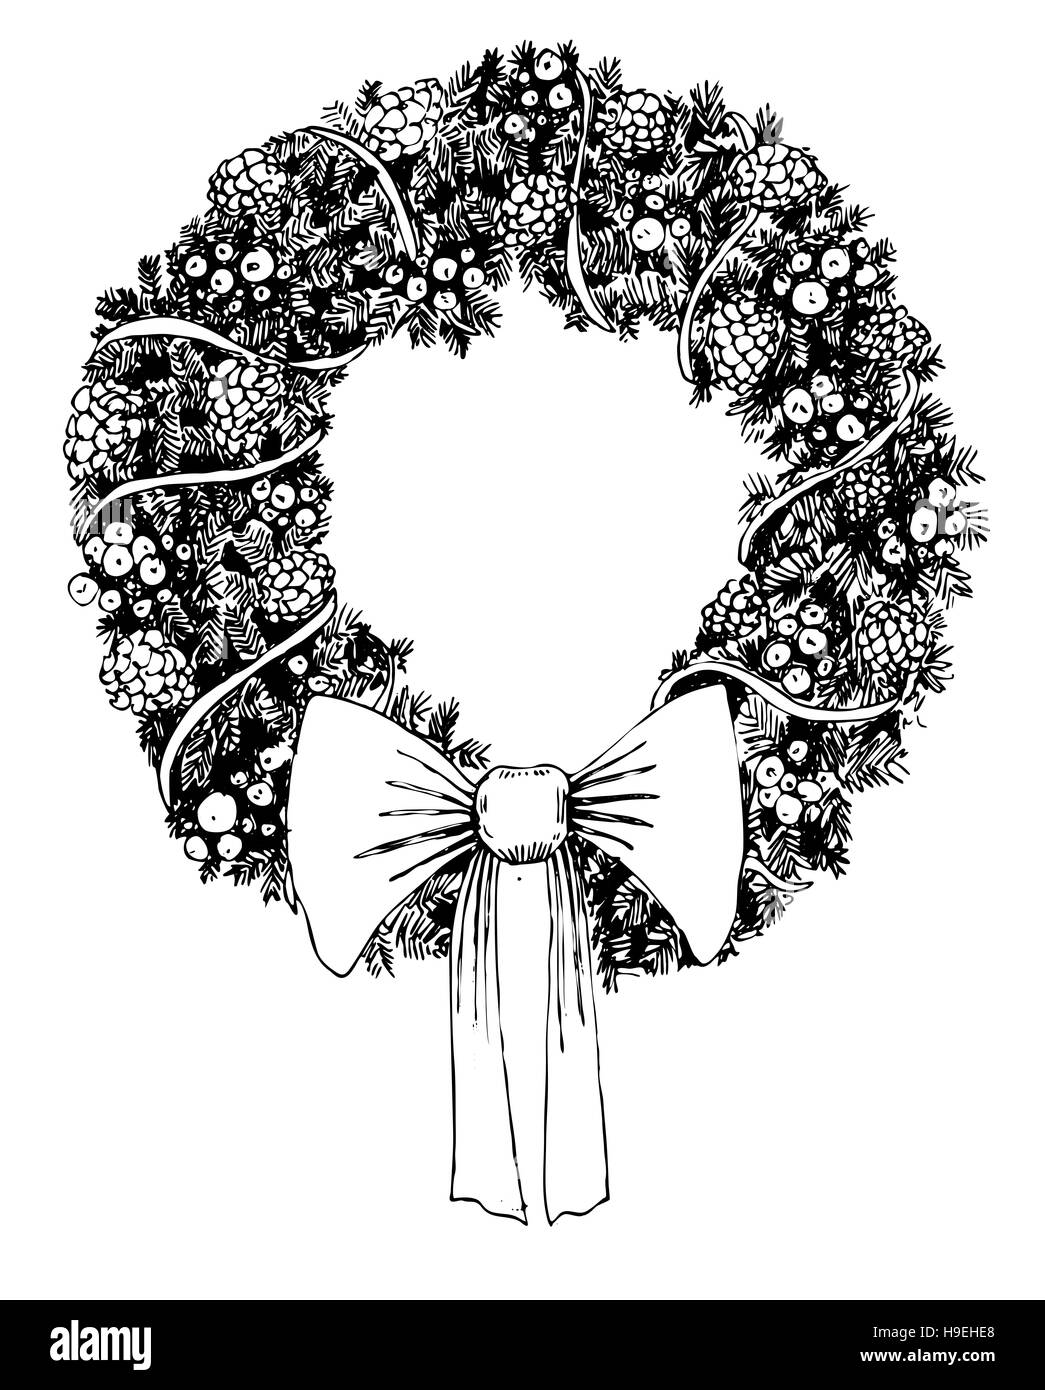 Handgezeichnete Weihnachtskranz mit Zapfen und Nadeln Stockfoto